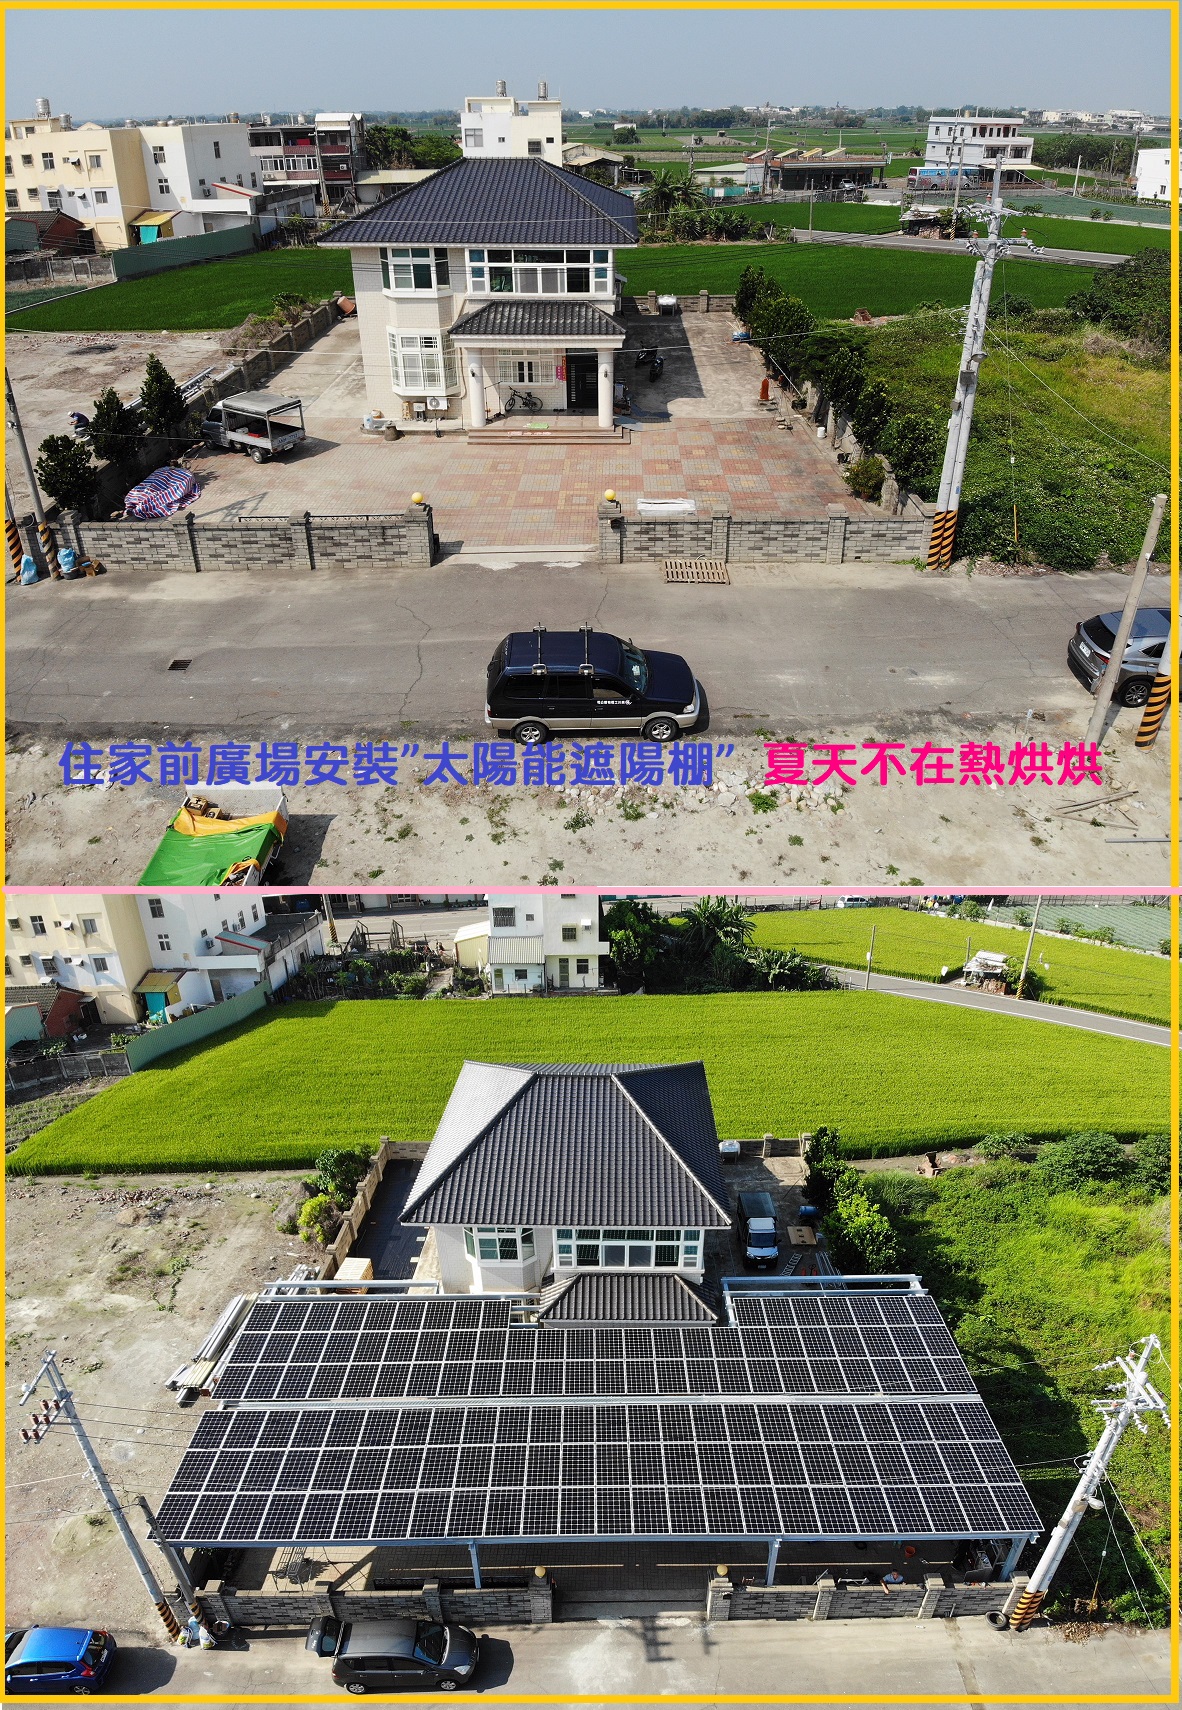 1601127003_彰化太陽能 二林太陽光電 太陽能遮陽棚 光電停車棚 太陽能投資 地面型發電系統 太陽能發電系統規劃 太陽能光電統包.jpg